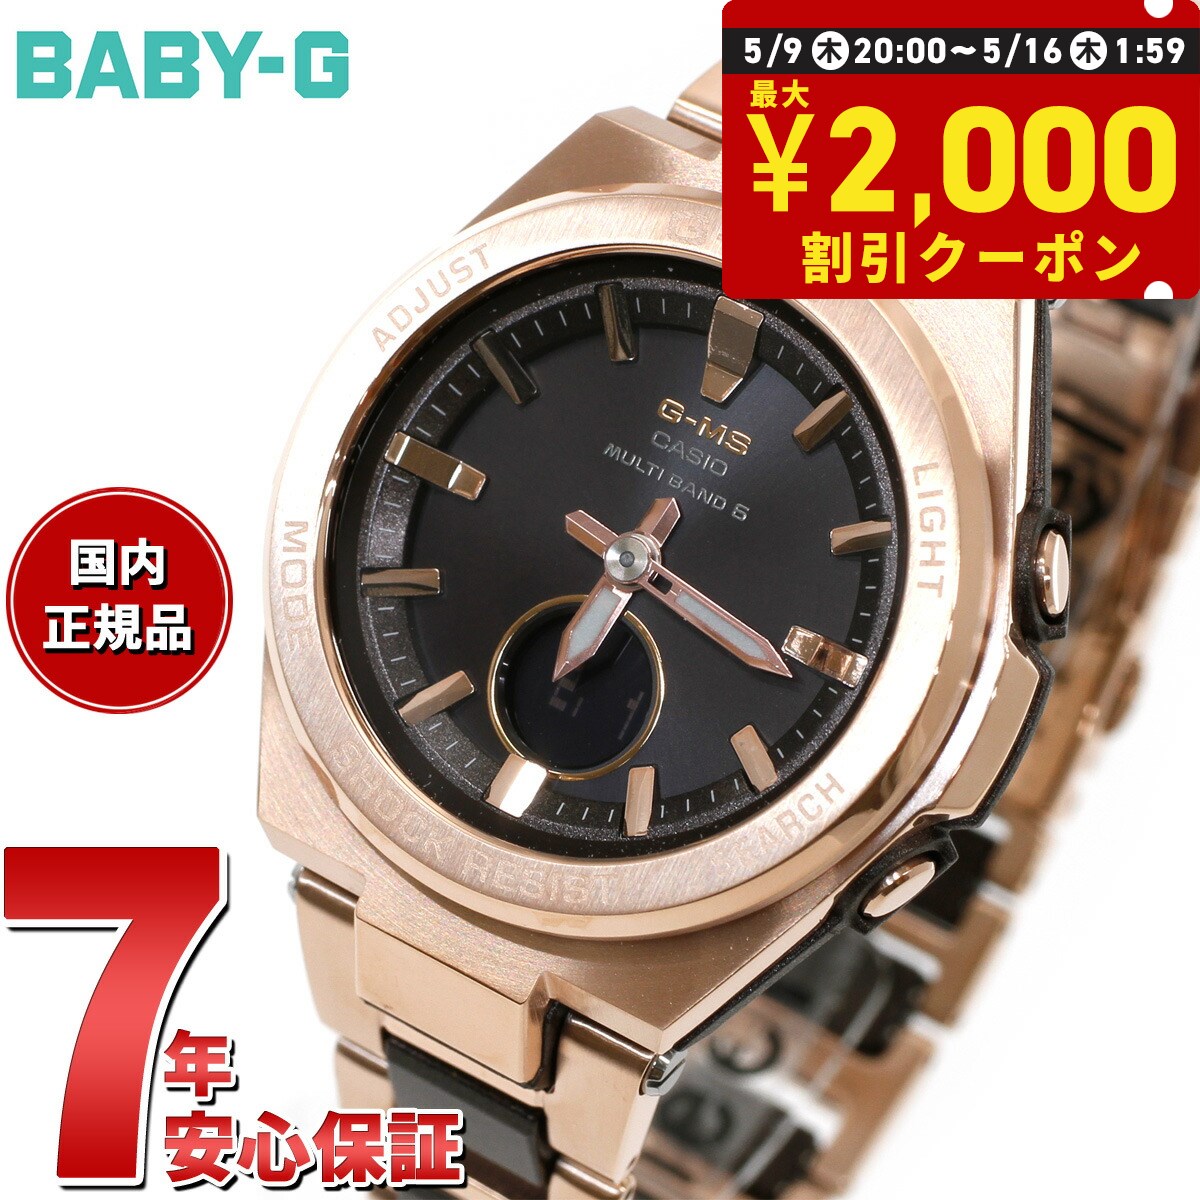 BABY-G カシオ ベビーG レディース G-MS 電波 ソーラー 腕時計 タフソーラー MSG-W200CG-5AJF